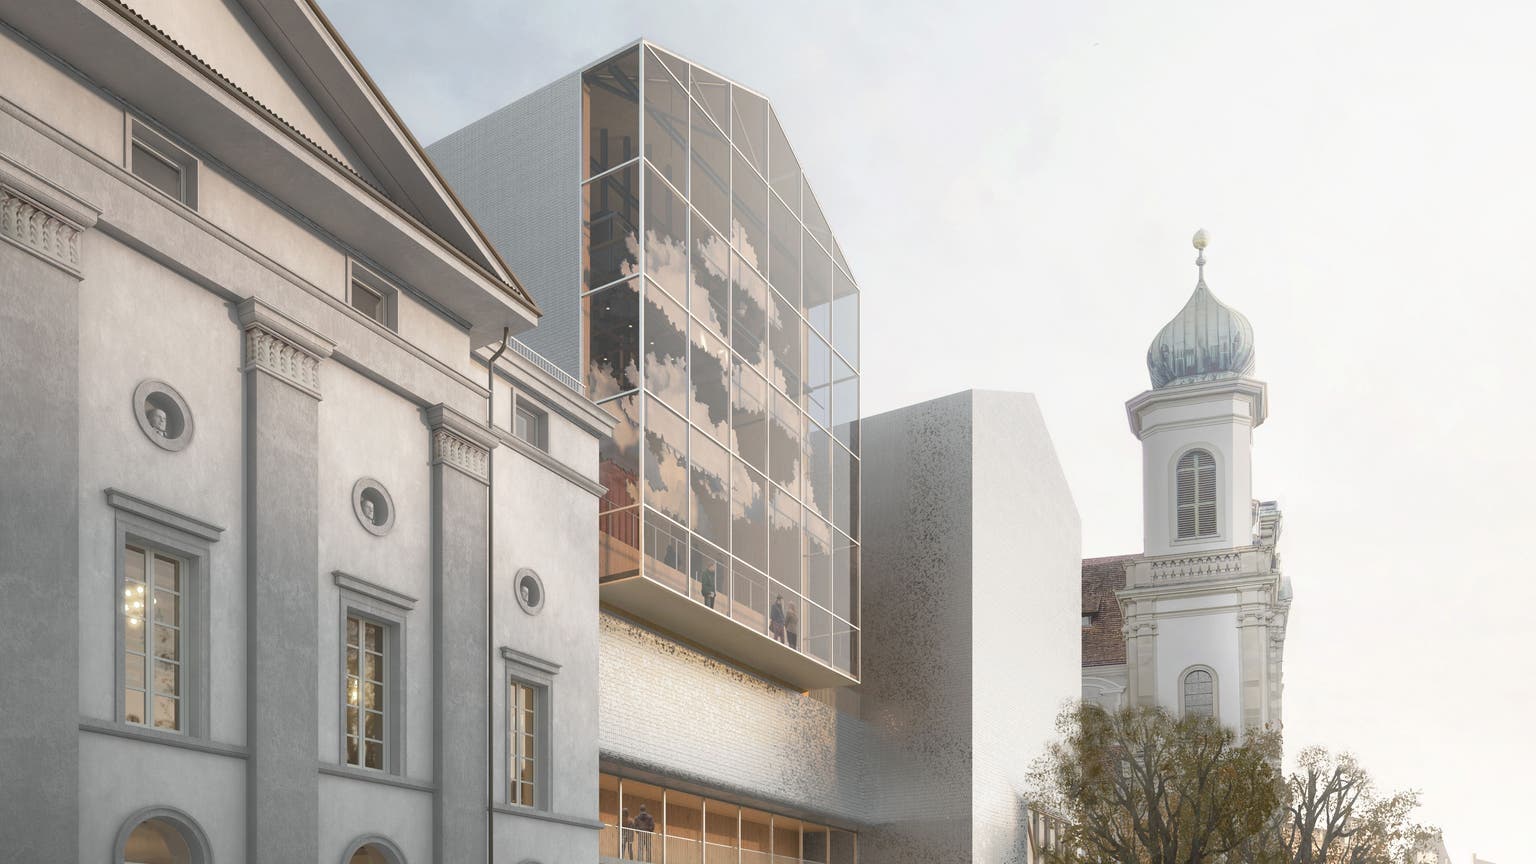 Das Panoramafenster verleiht dem Neuen Luzerner Theater ein Gesicht. (Visualisierung: Filippo Bolognese Images)